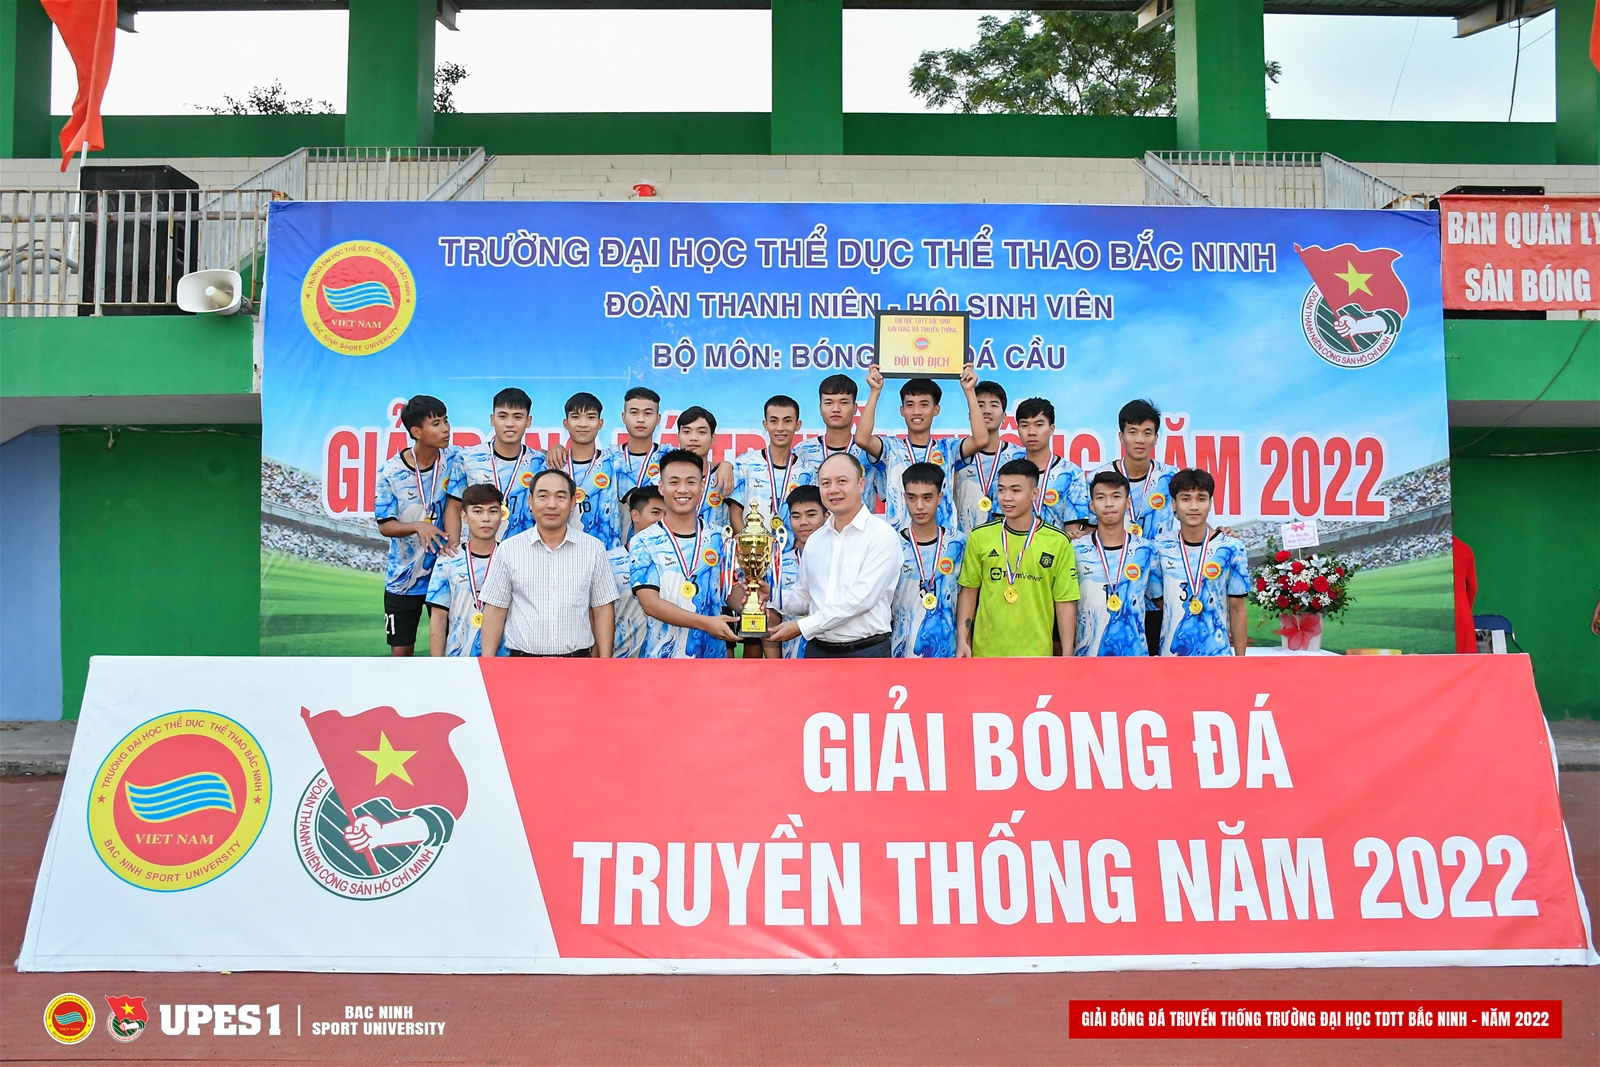 Chung kết và bế mạc Giải bóng đá truyền thống Trường Đại học TDTT Bắc Ninh - năm 2022